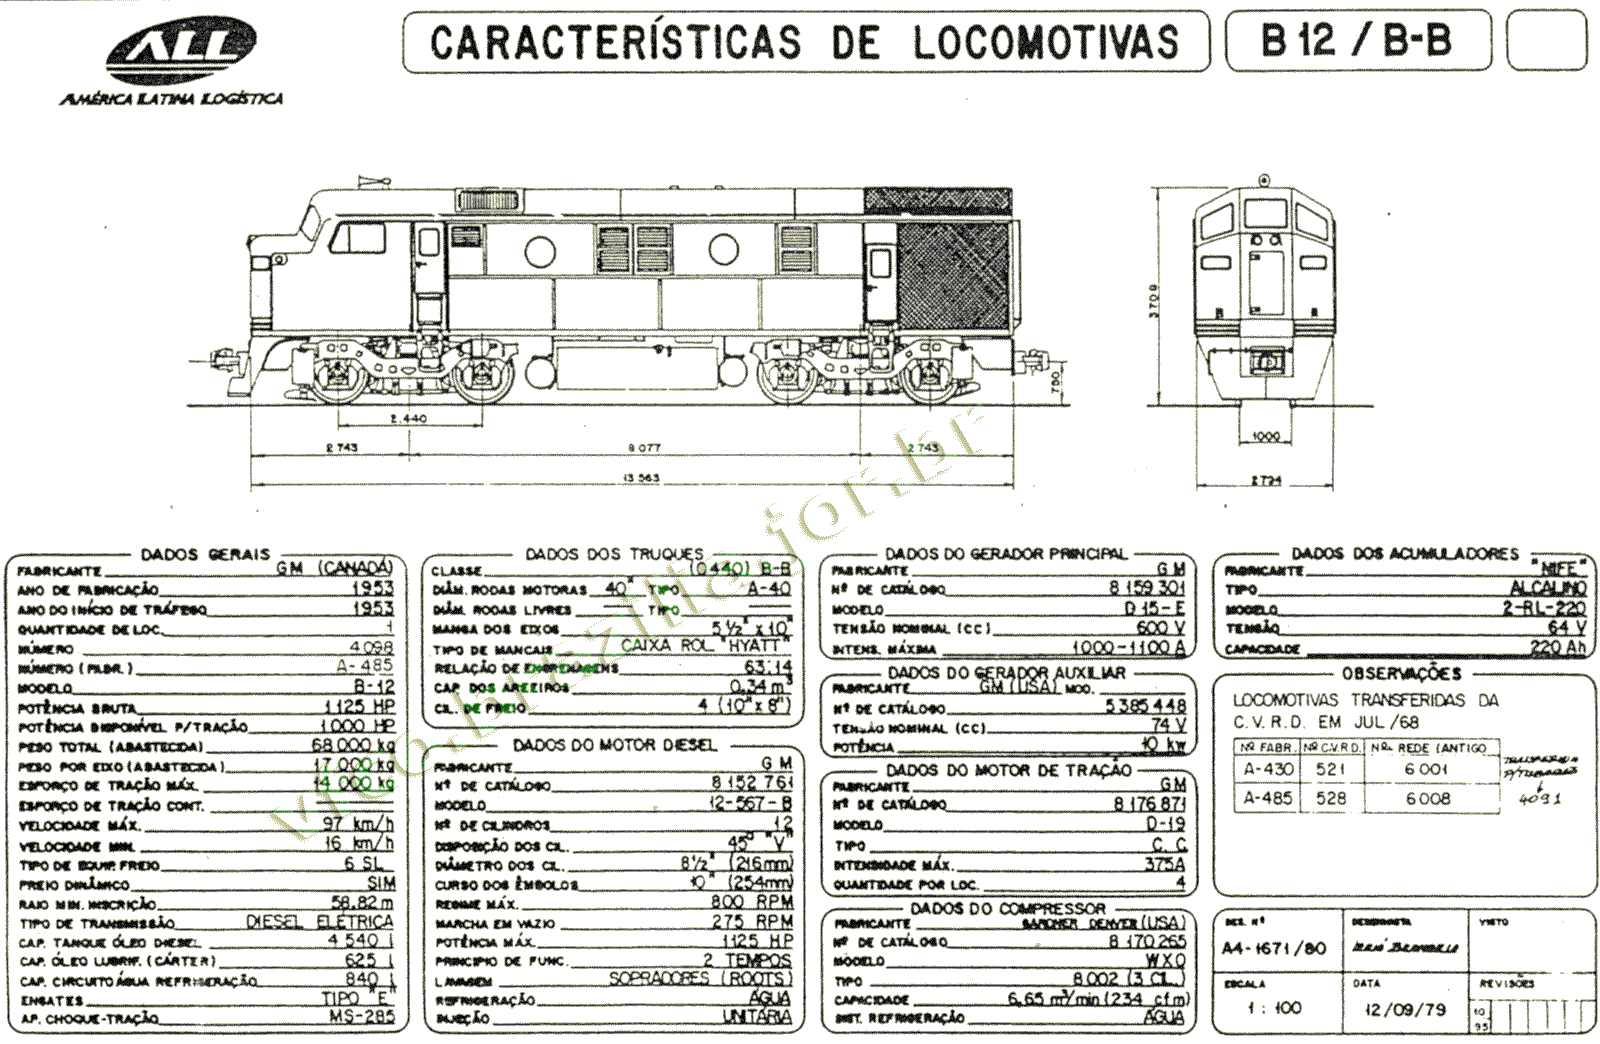 Desenho e características da Locomotiva B12 da ferrovia ALL